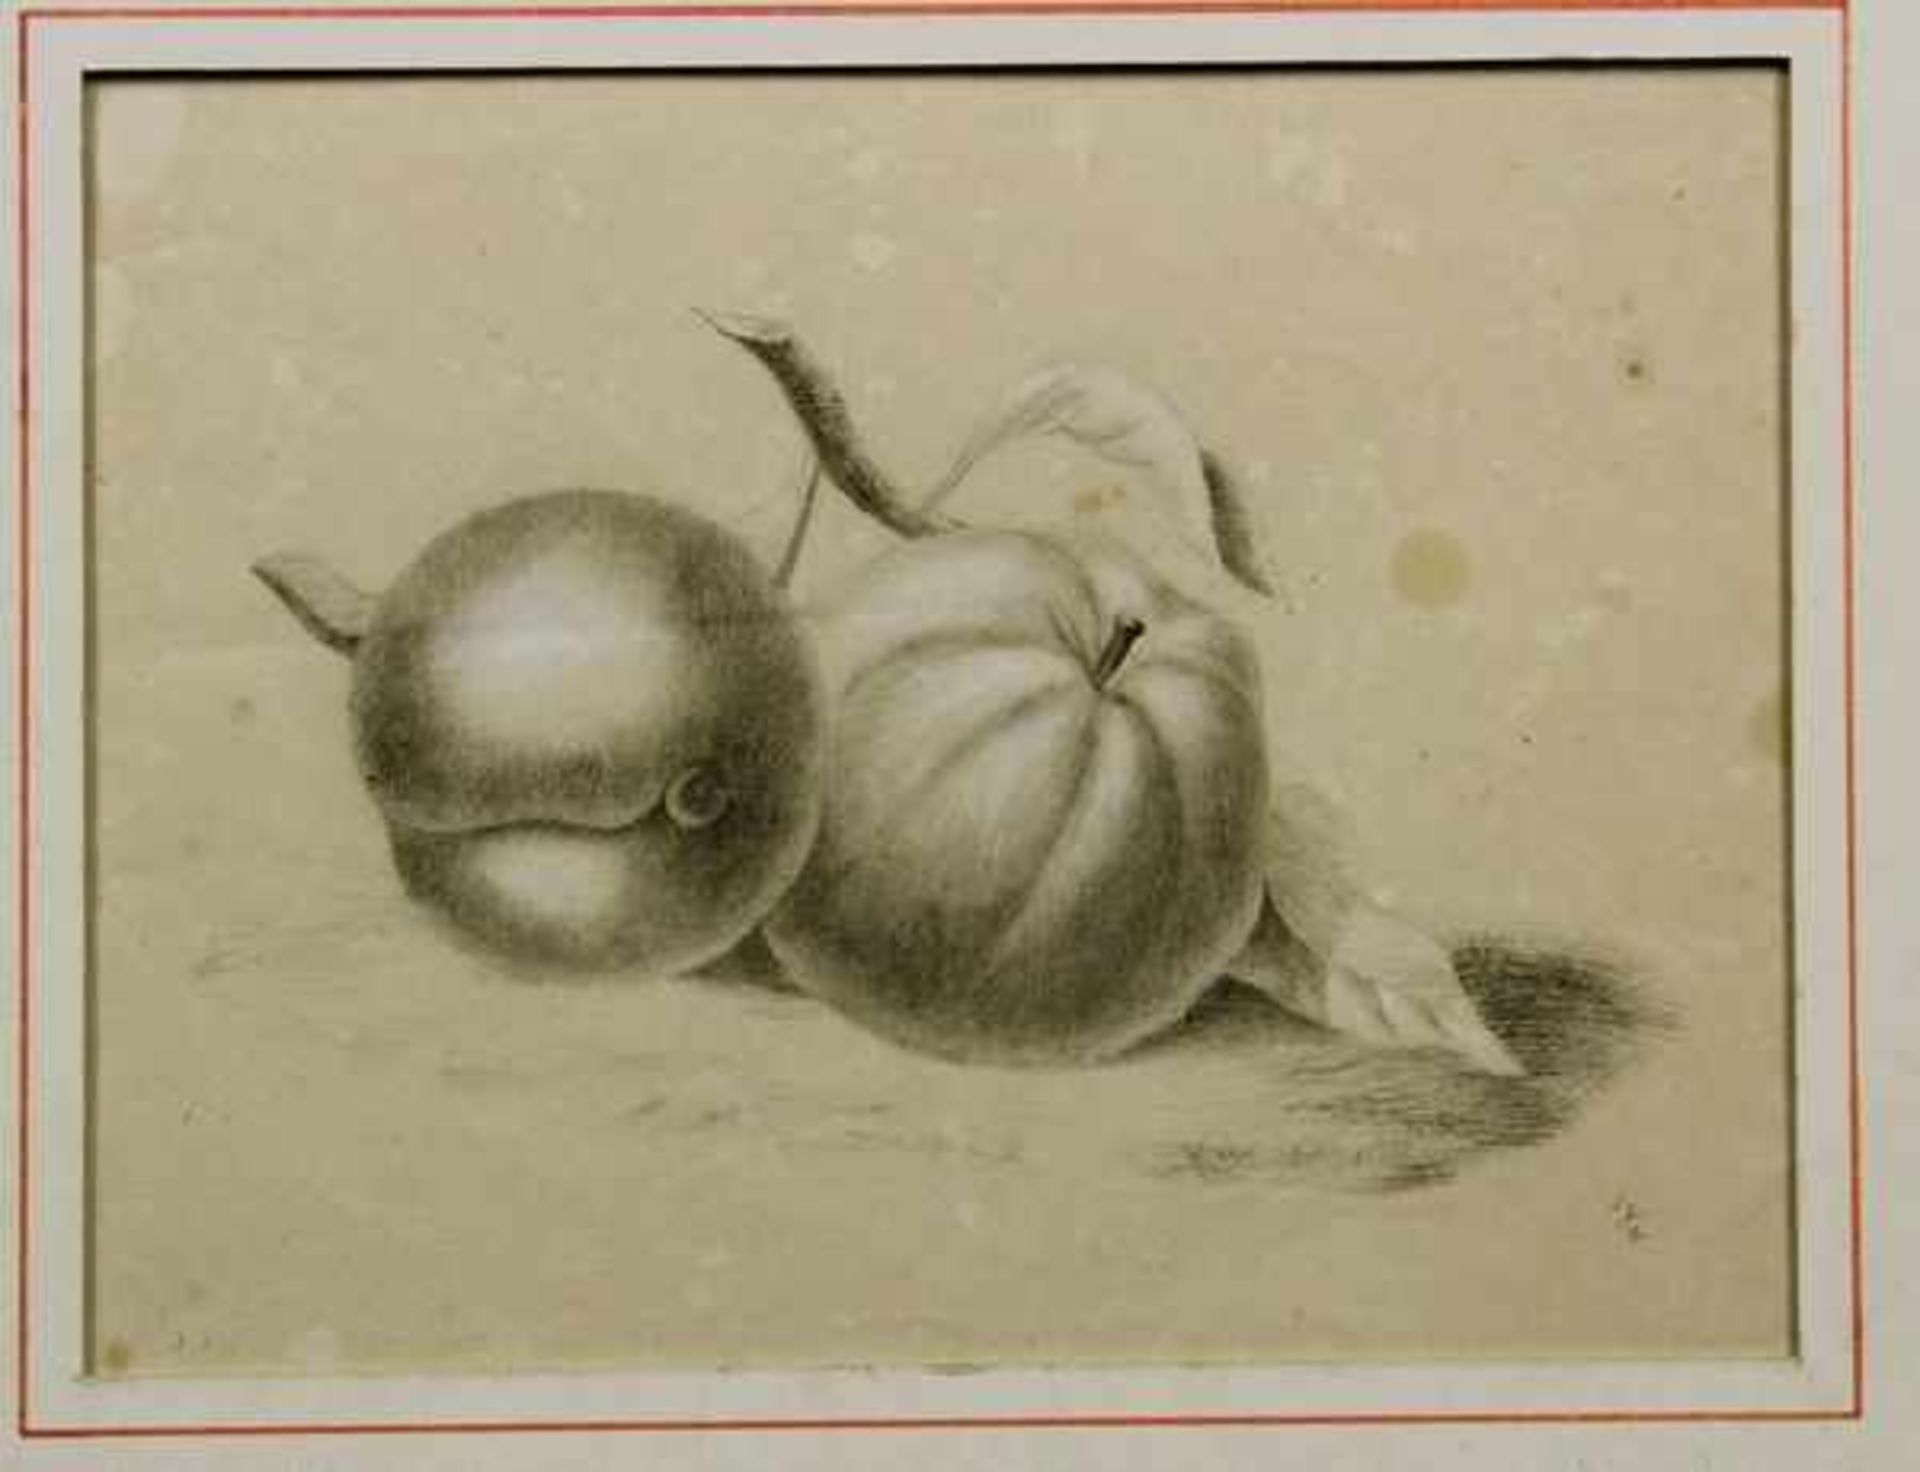 Emilie Preyer (1849 - 1930) "Stillleben mit Früchten"Bleistift, weiß gehöht auf Papier ca. 19 x 25